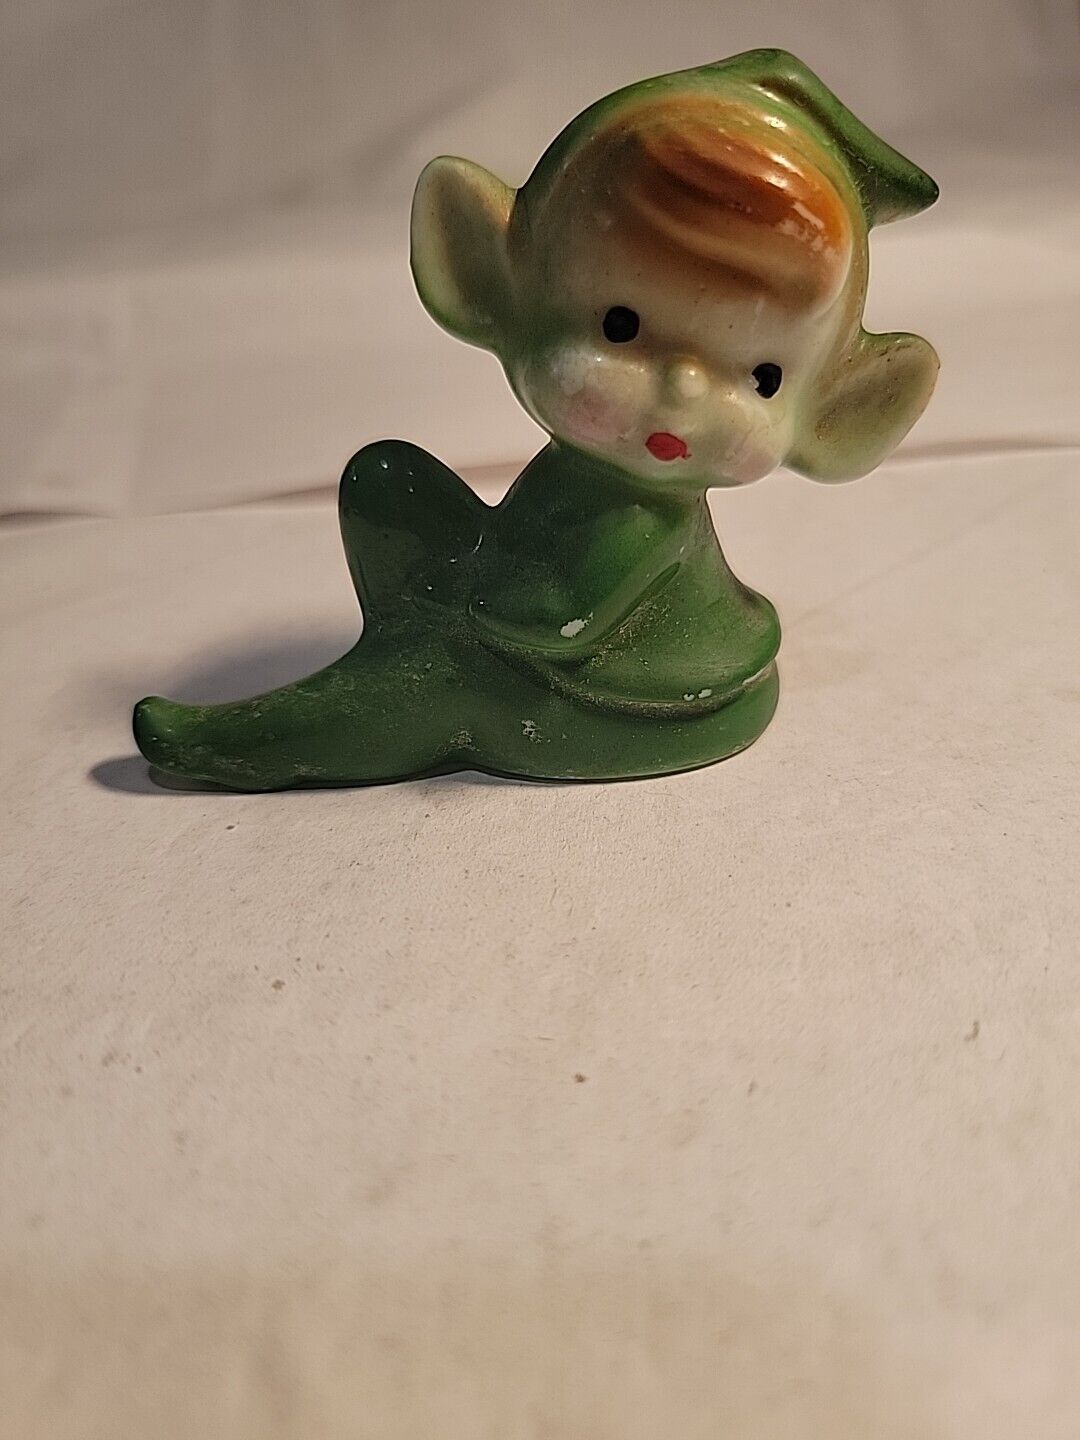 Vintage Pixie Elf Figurine - Green Porcelain Japan 2”